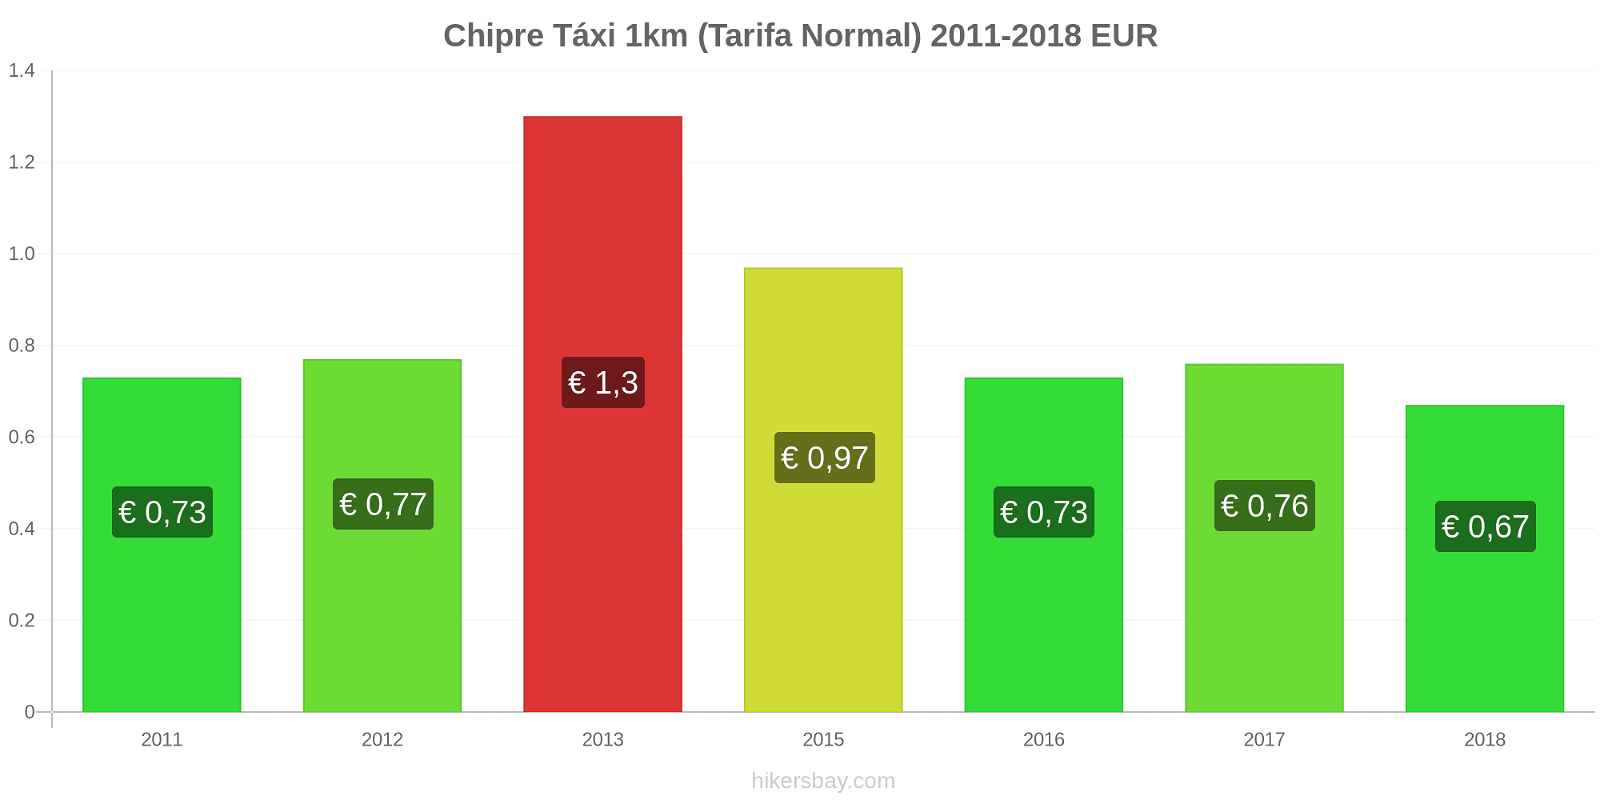 Chipre mudanças de preços Táxi 1km (Tarifa Normal) hikersbay.com